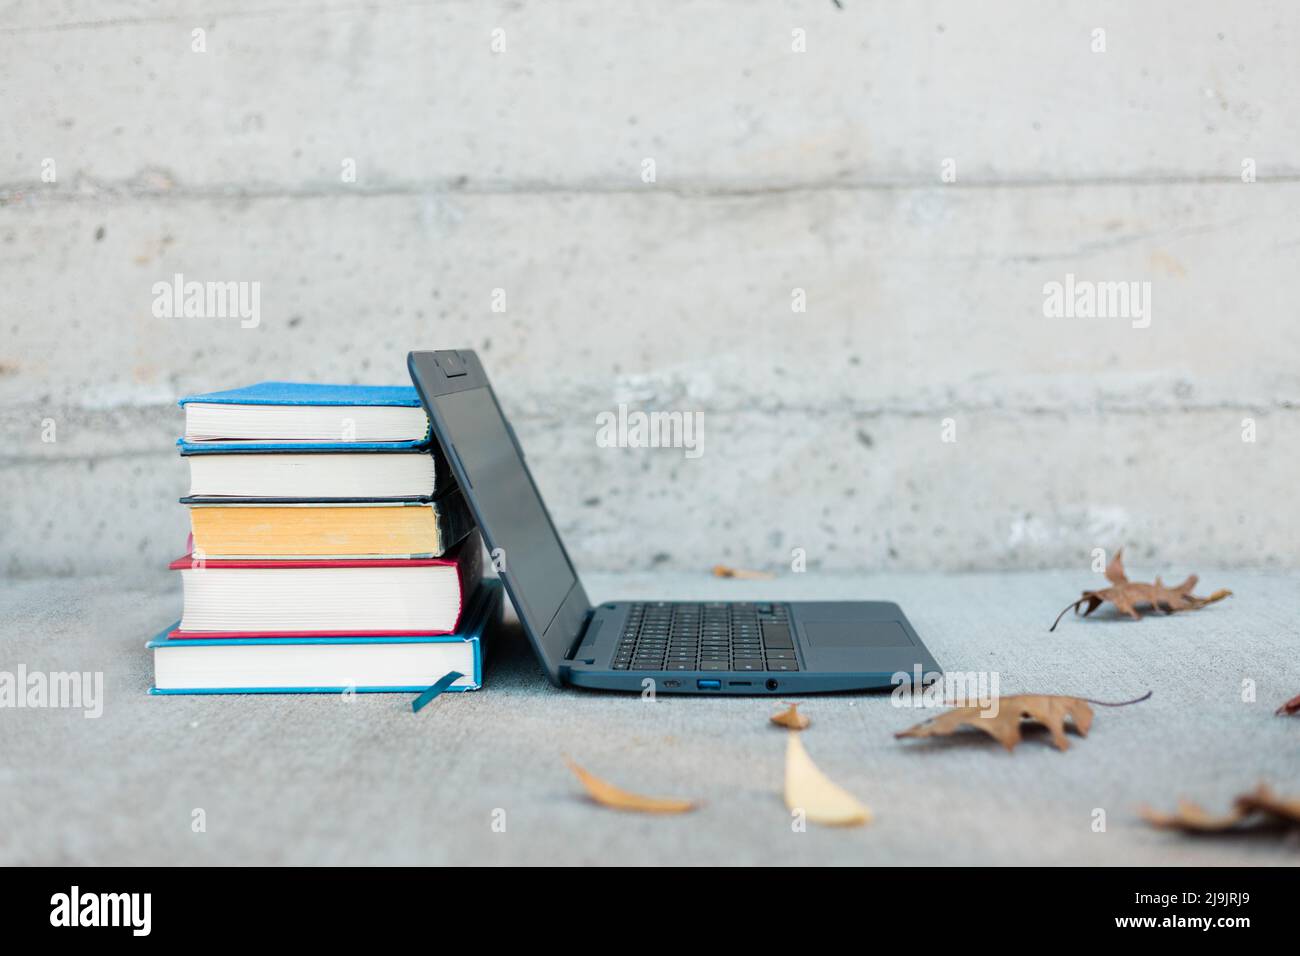 Libros apilados contra un portátil con hojas de otoño a su alrededor. Imagen educativa para la escuela en línea. Foto de stock